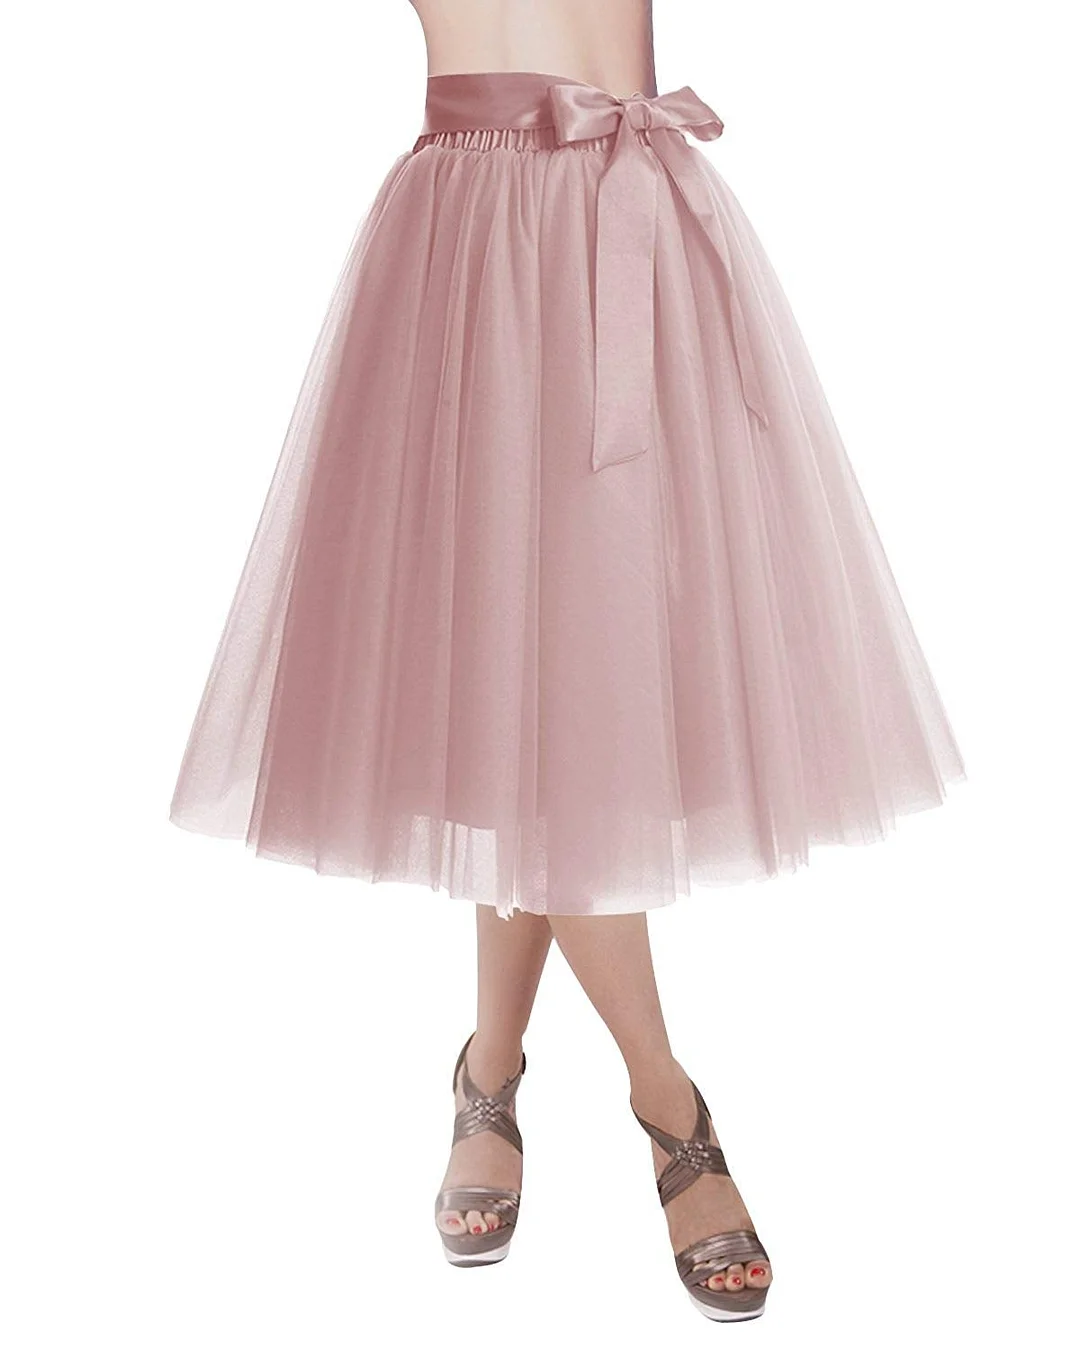 Tutu Skirt  Knee Length Tulle Skirt Tutu Skirt Evening Party Gown Prom Formal Skirts